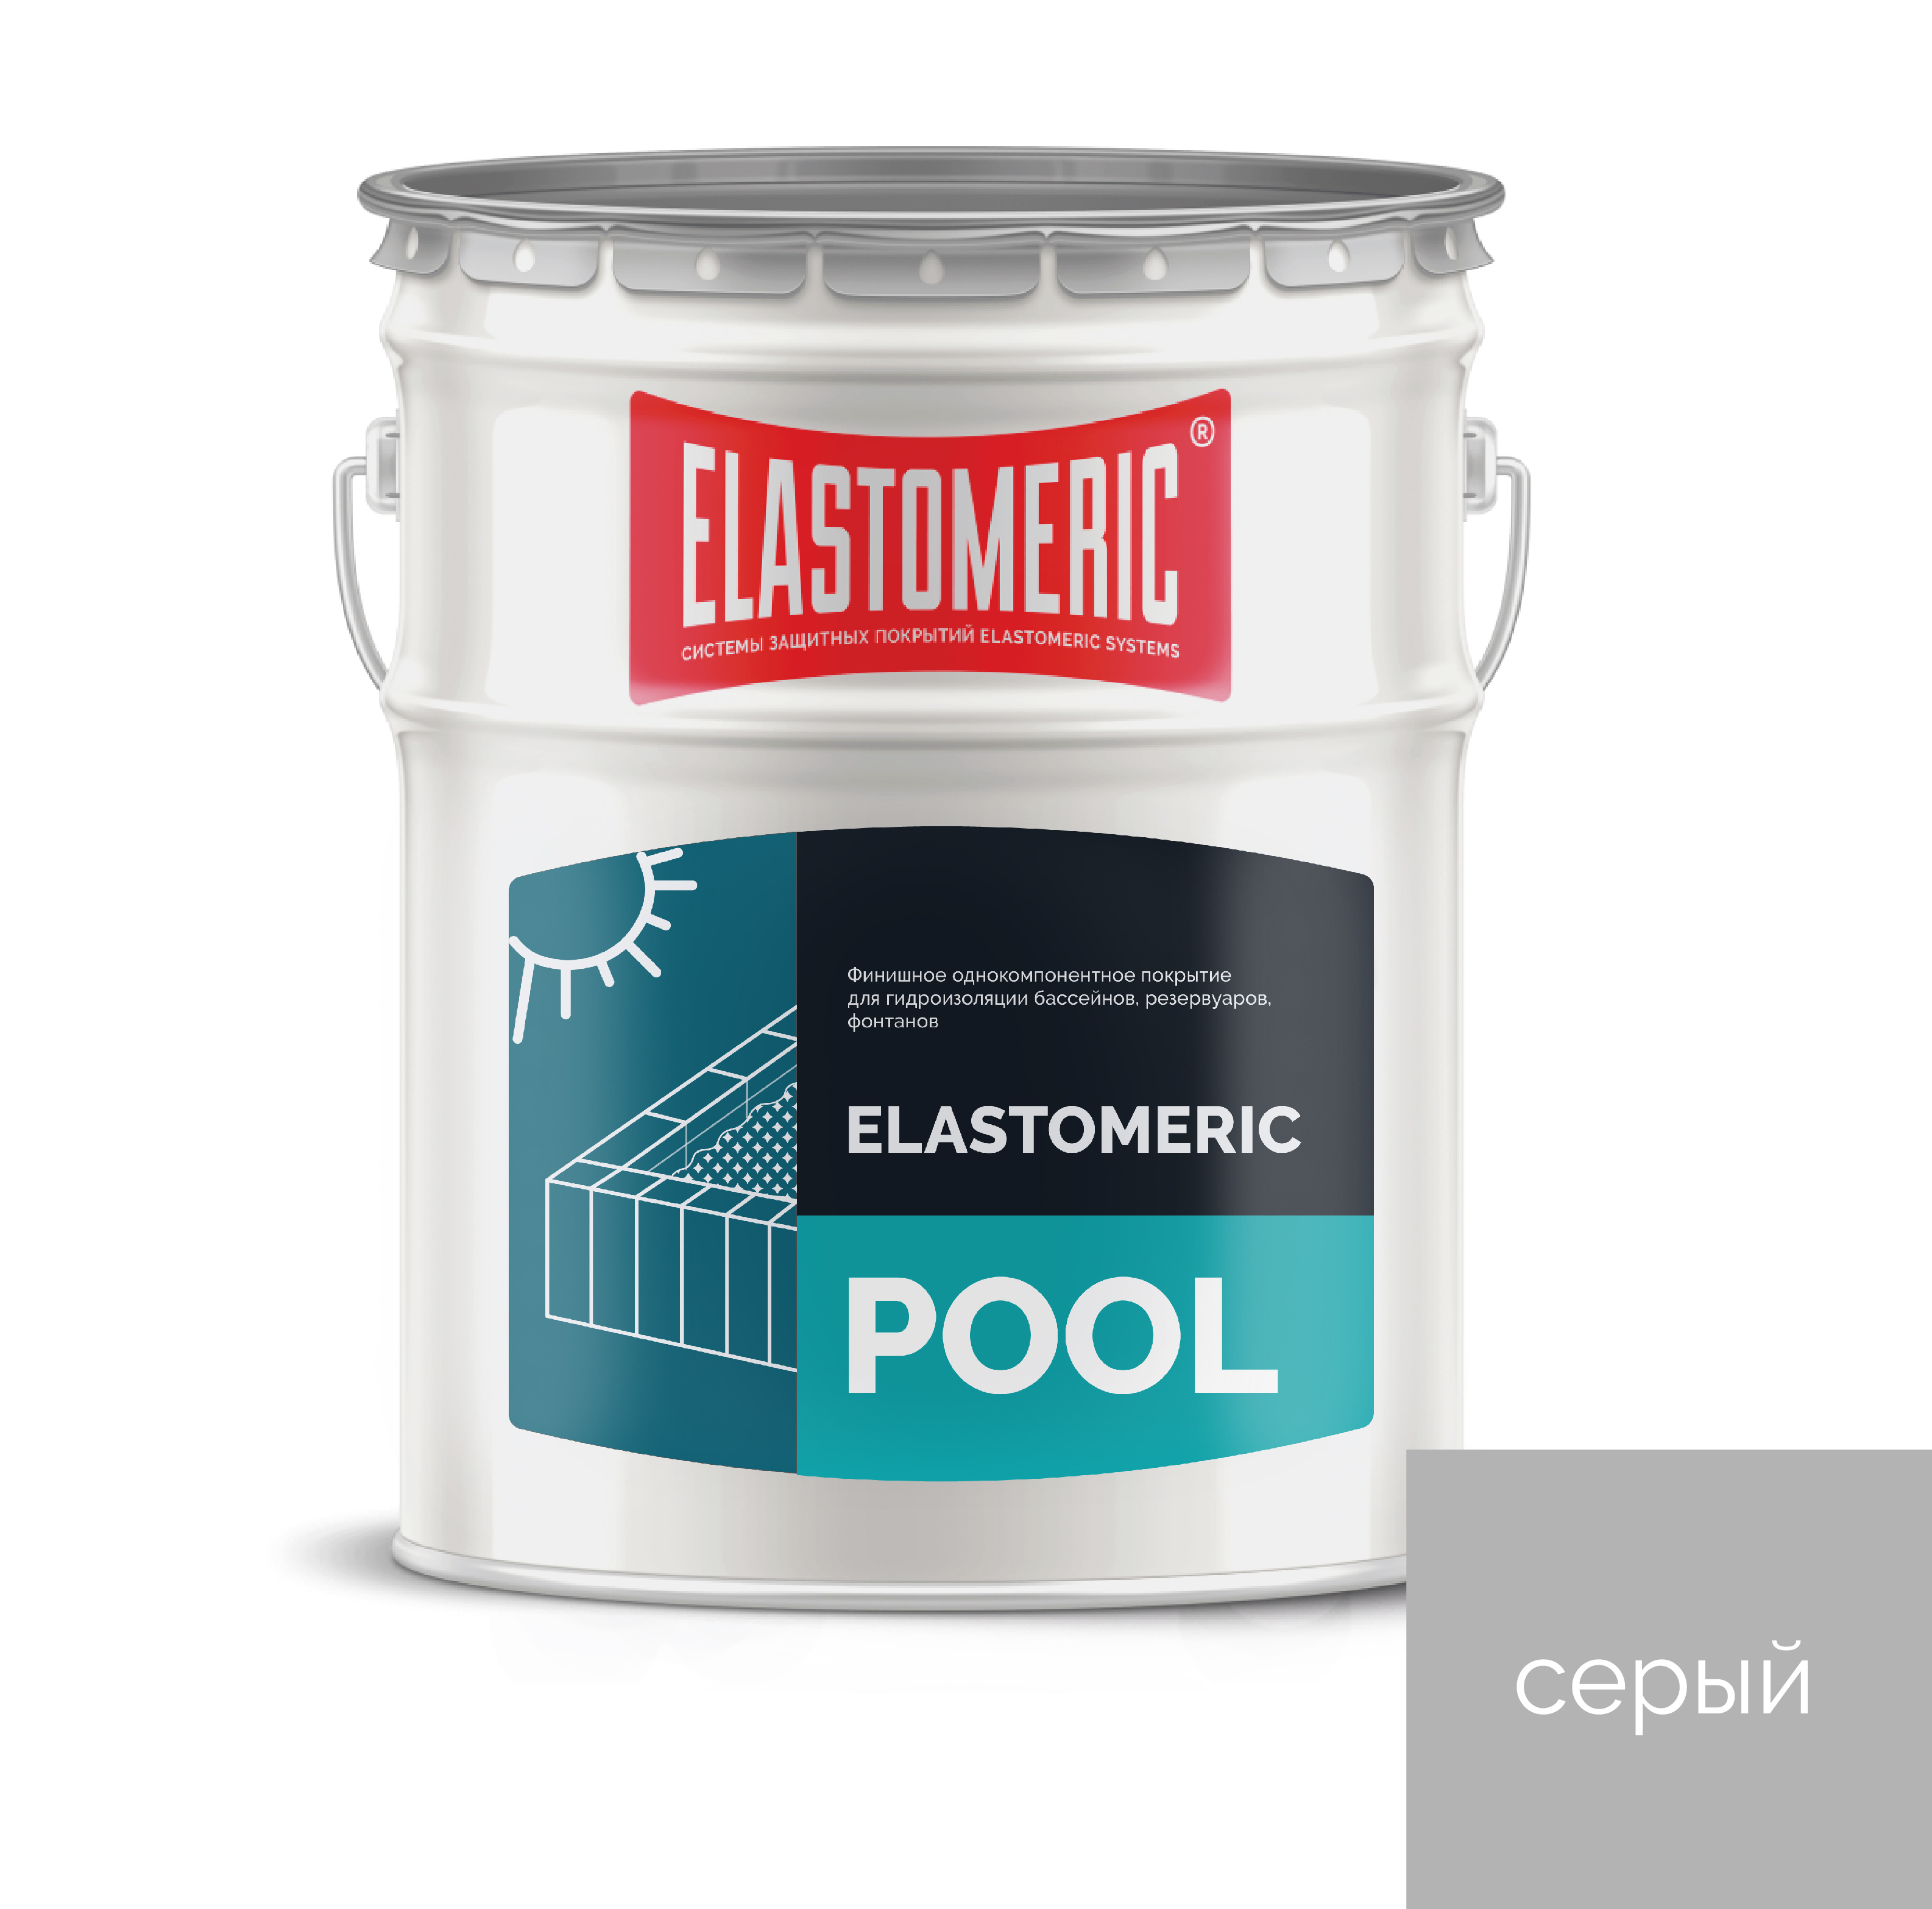 гидроизоляция проникающая дегидрол люкс 3 d3pak20 20кг Гидроизоляция для бассейна Elastomeric Pool 20кг., серый